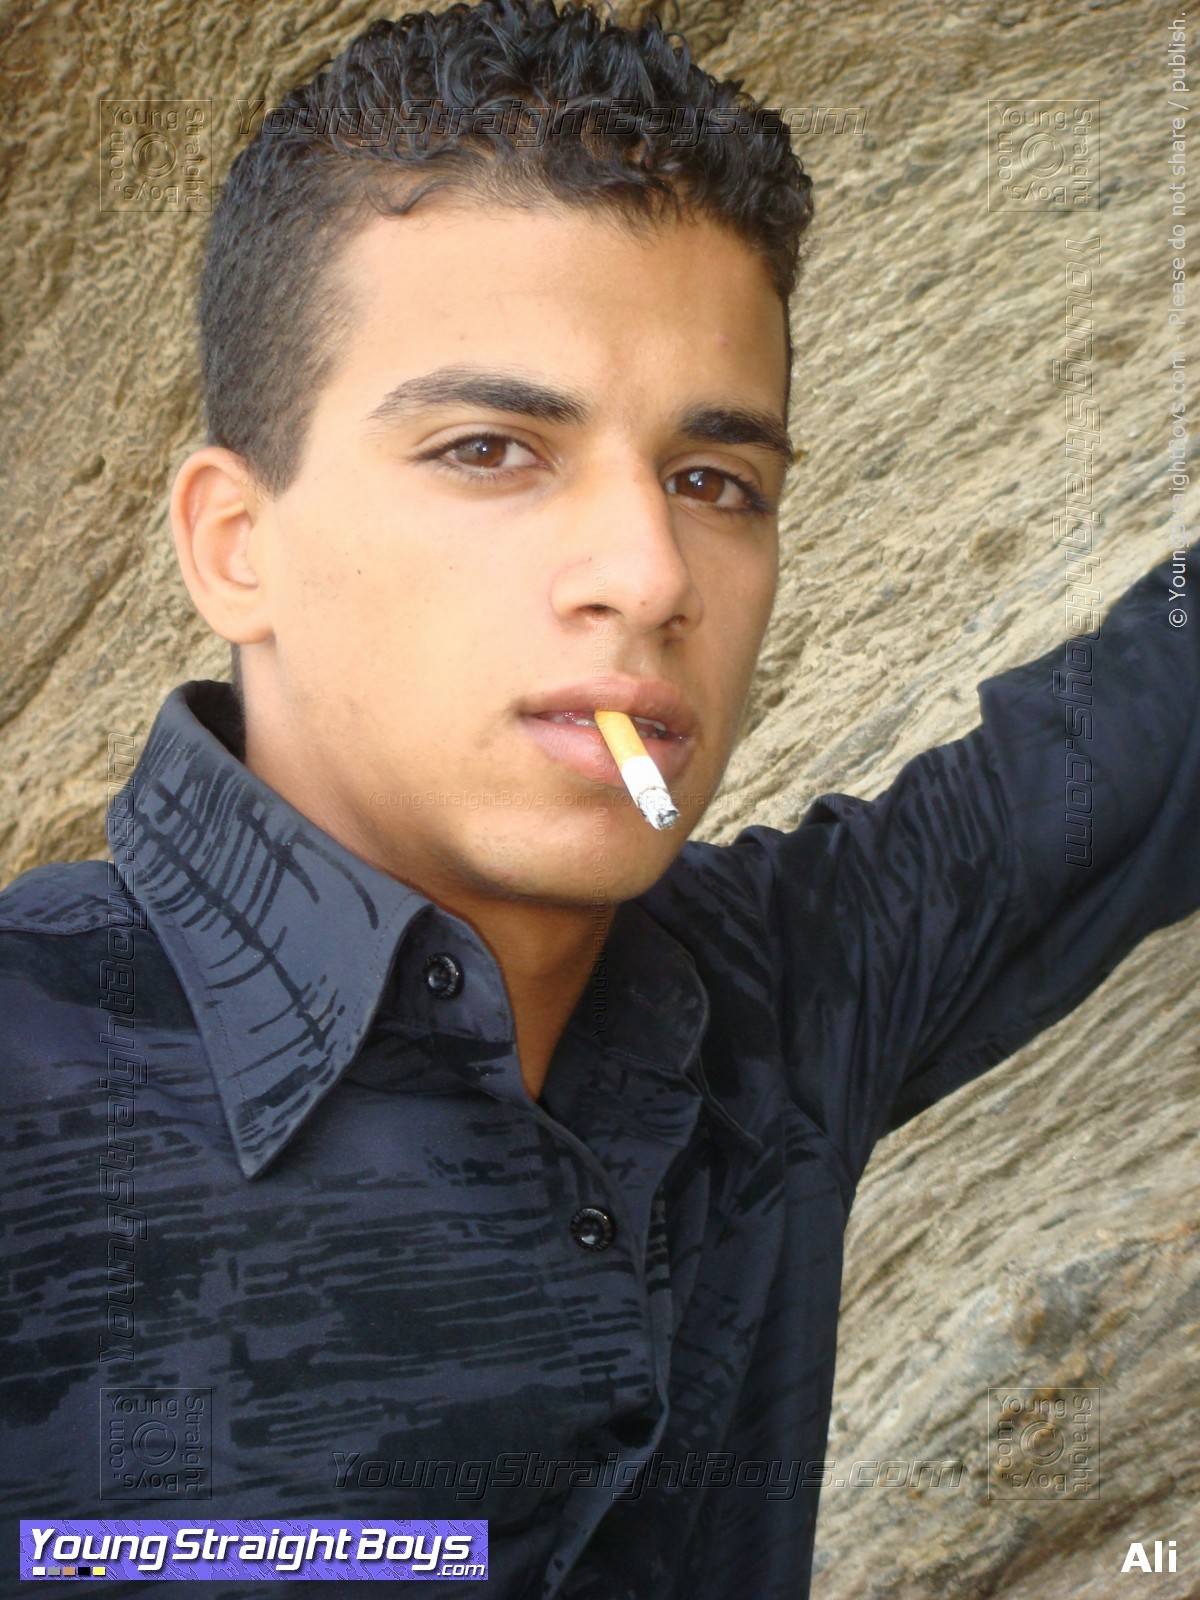 불량 아라비아 이성애자 청년 알리가 담배를 피우는 얼굴 사진 (해변에서 사진 세션 중, 내가 그를 빨 수있는 호텔 방에서 섹스 세션 전에)